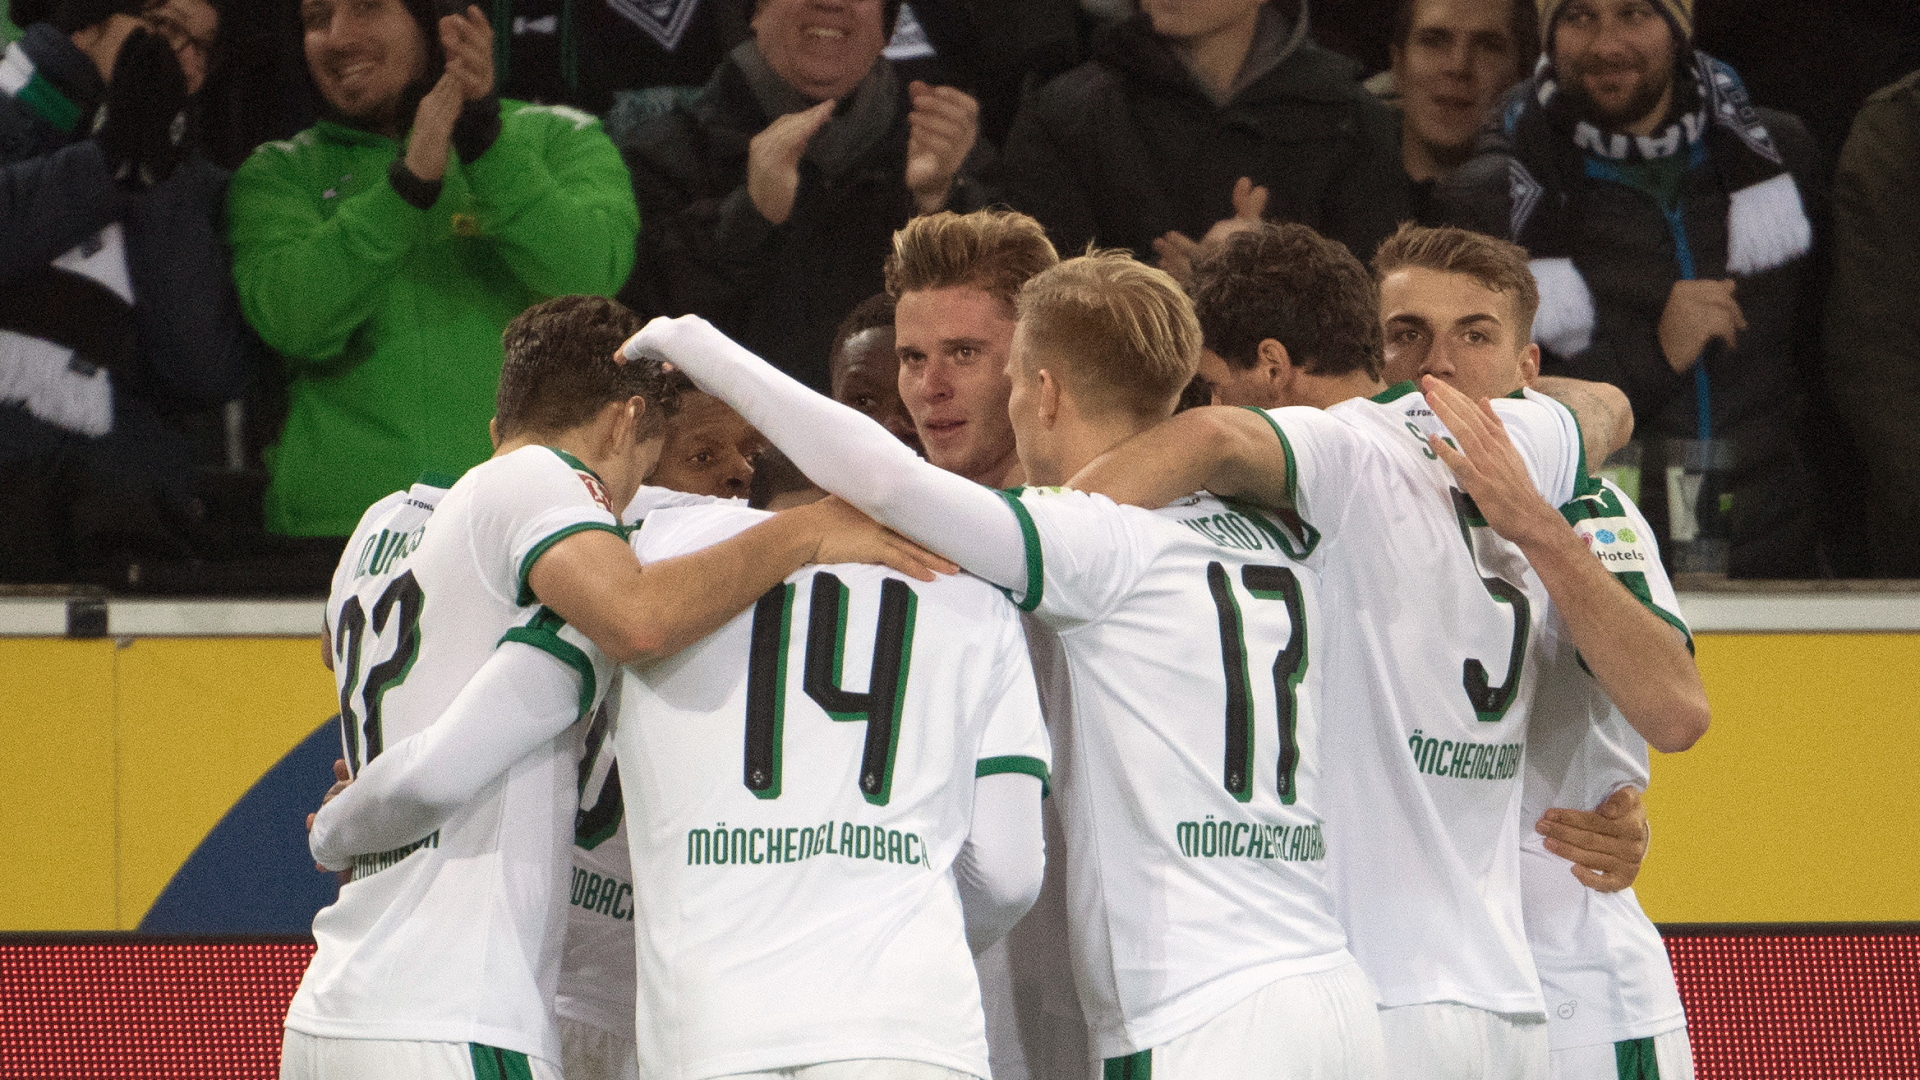 Spieler von Borussia Mönchengladbach bejubeln ein Tor gegen den 1. FC Nürnberg | Bildquelle: dpa